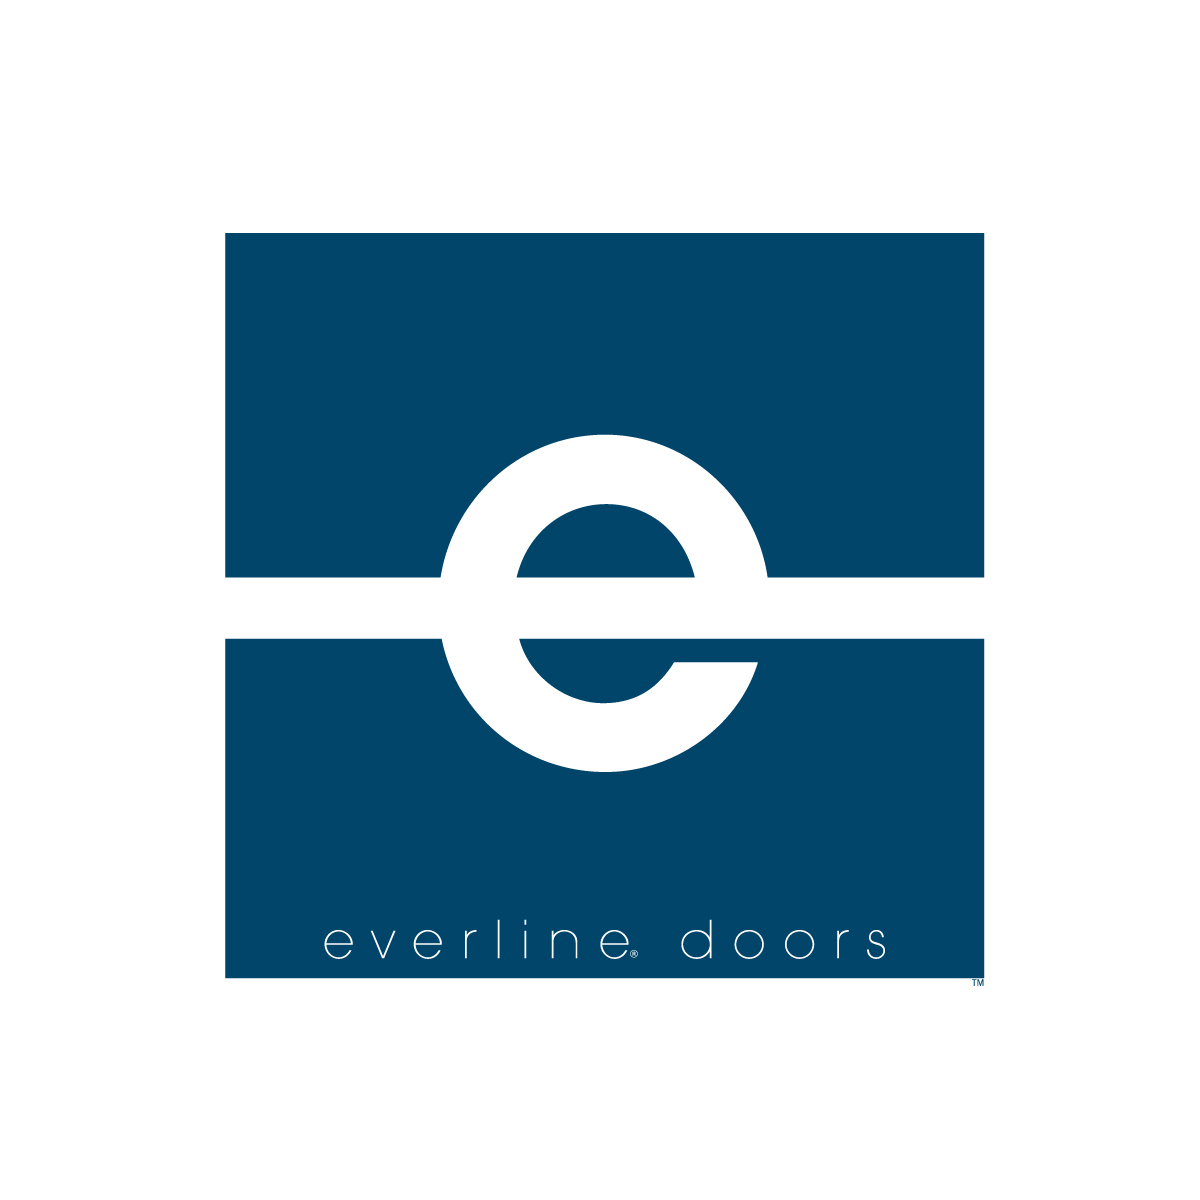 Everline Doors typographic logo